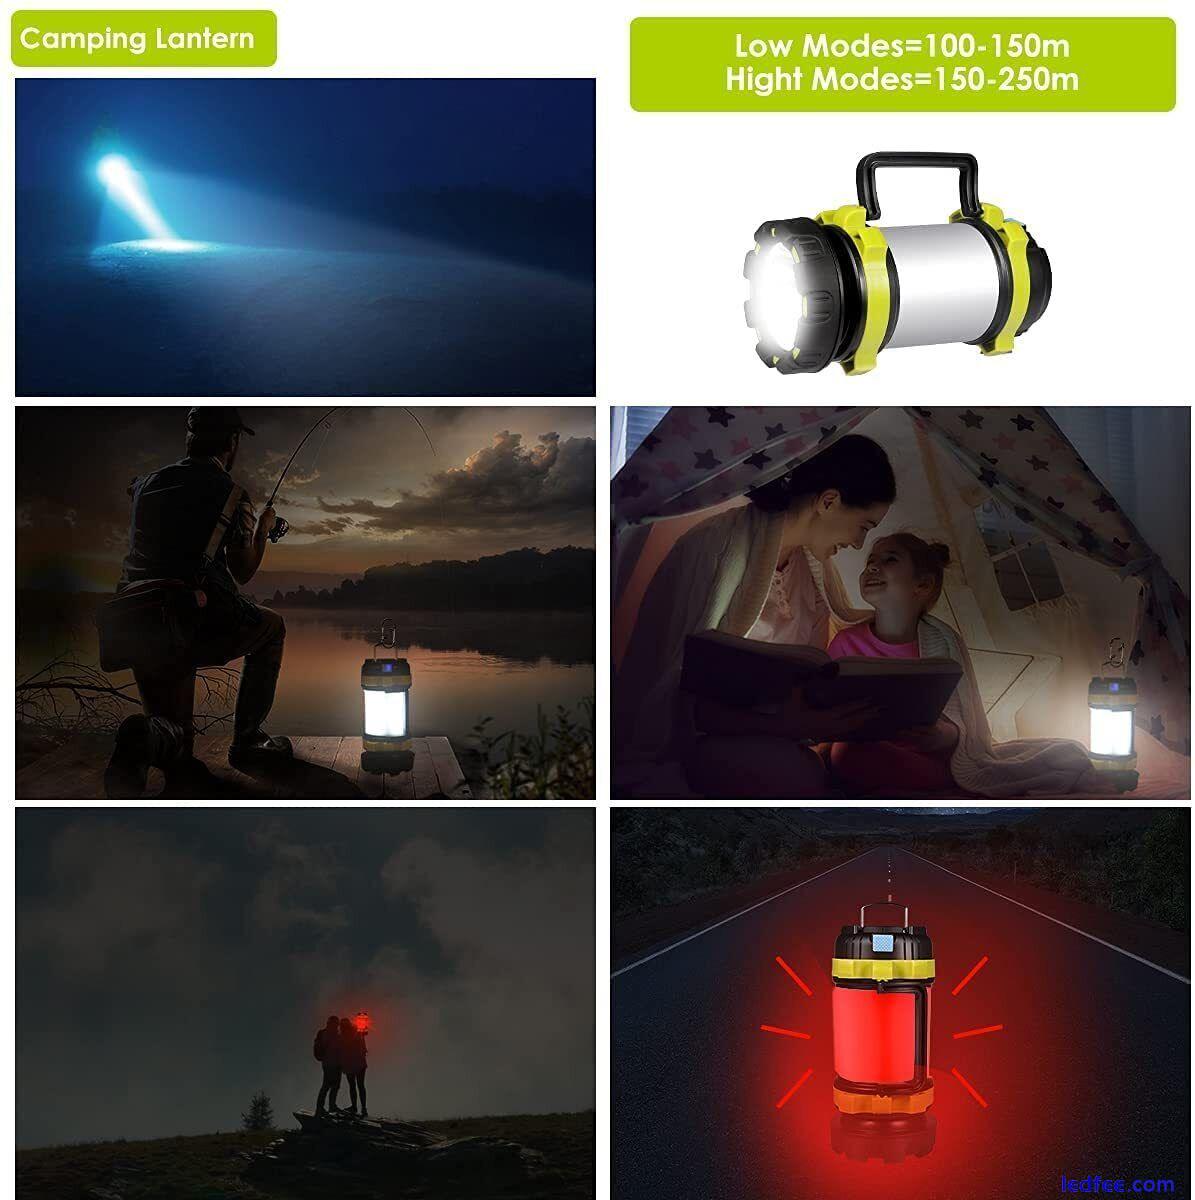 800 Lumen Camping Lantern, 6 Light Modes, 3700mAh Power Bank, IPX6 Water Resist 4 